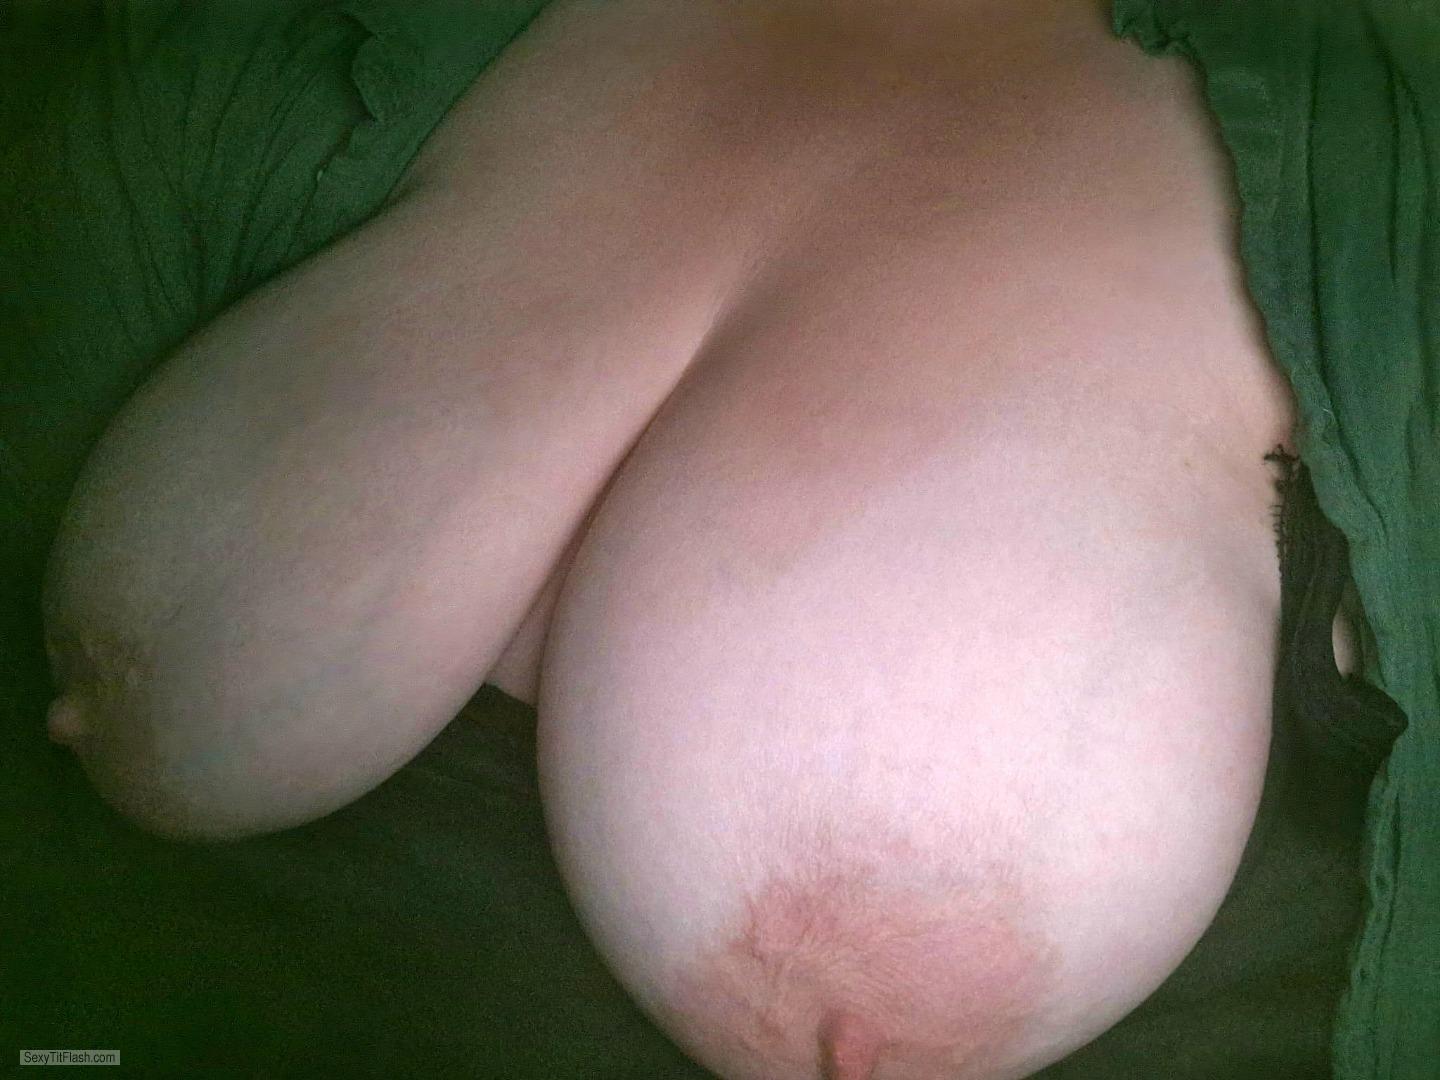 Tit Flash: My Big Tits (Selfie) - Topless Big Natural Boobs from United Kingdom